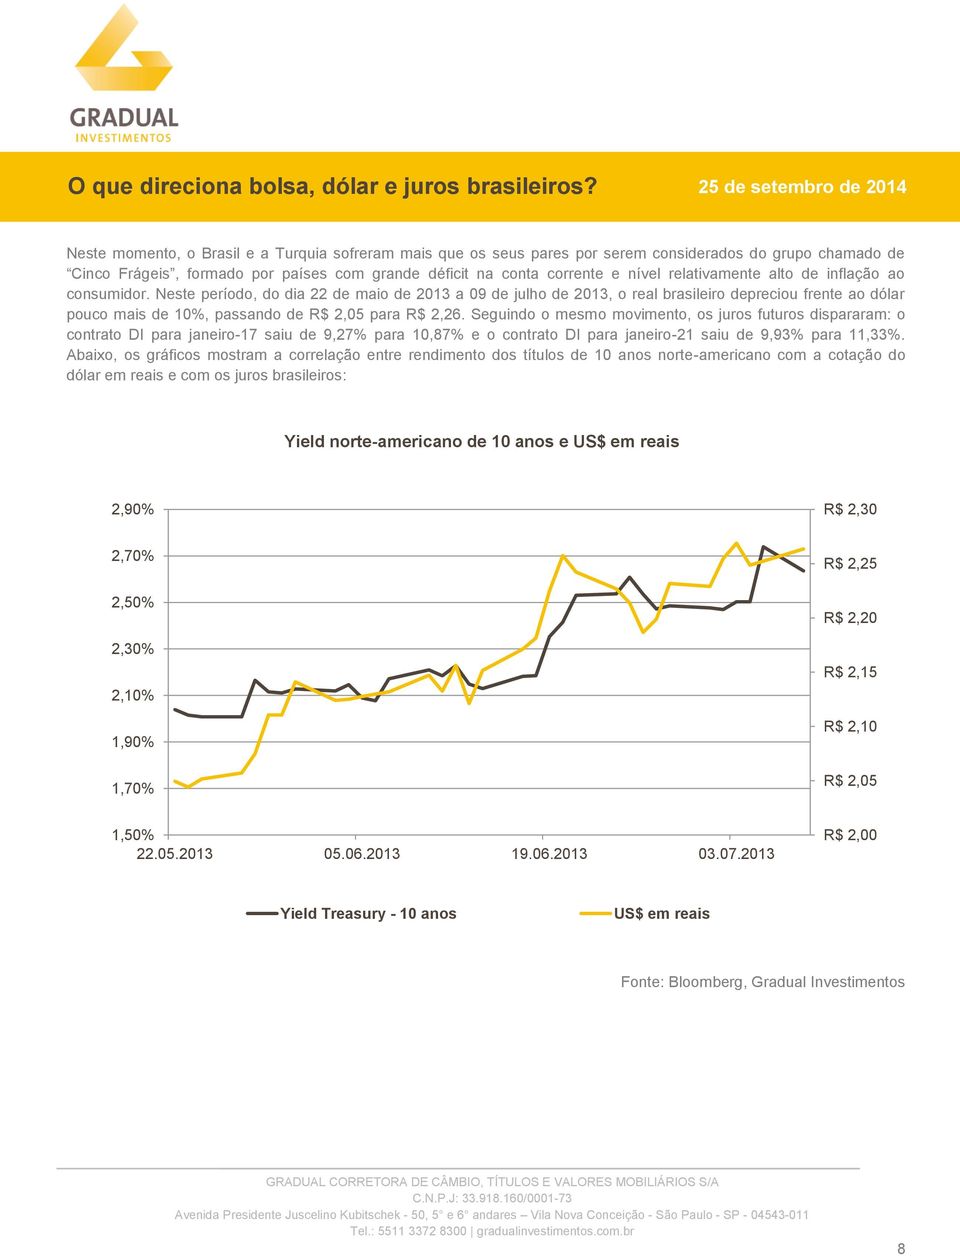 Neste período, do dia 22 de maio de 2013 a 09 de julho de 2013, o real brasileiro depreciou frente ao dólar pouco mais de 10%, passando de R$ 2,05 para R$ 2,26.